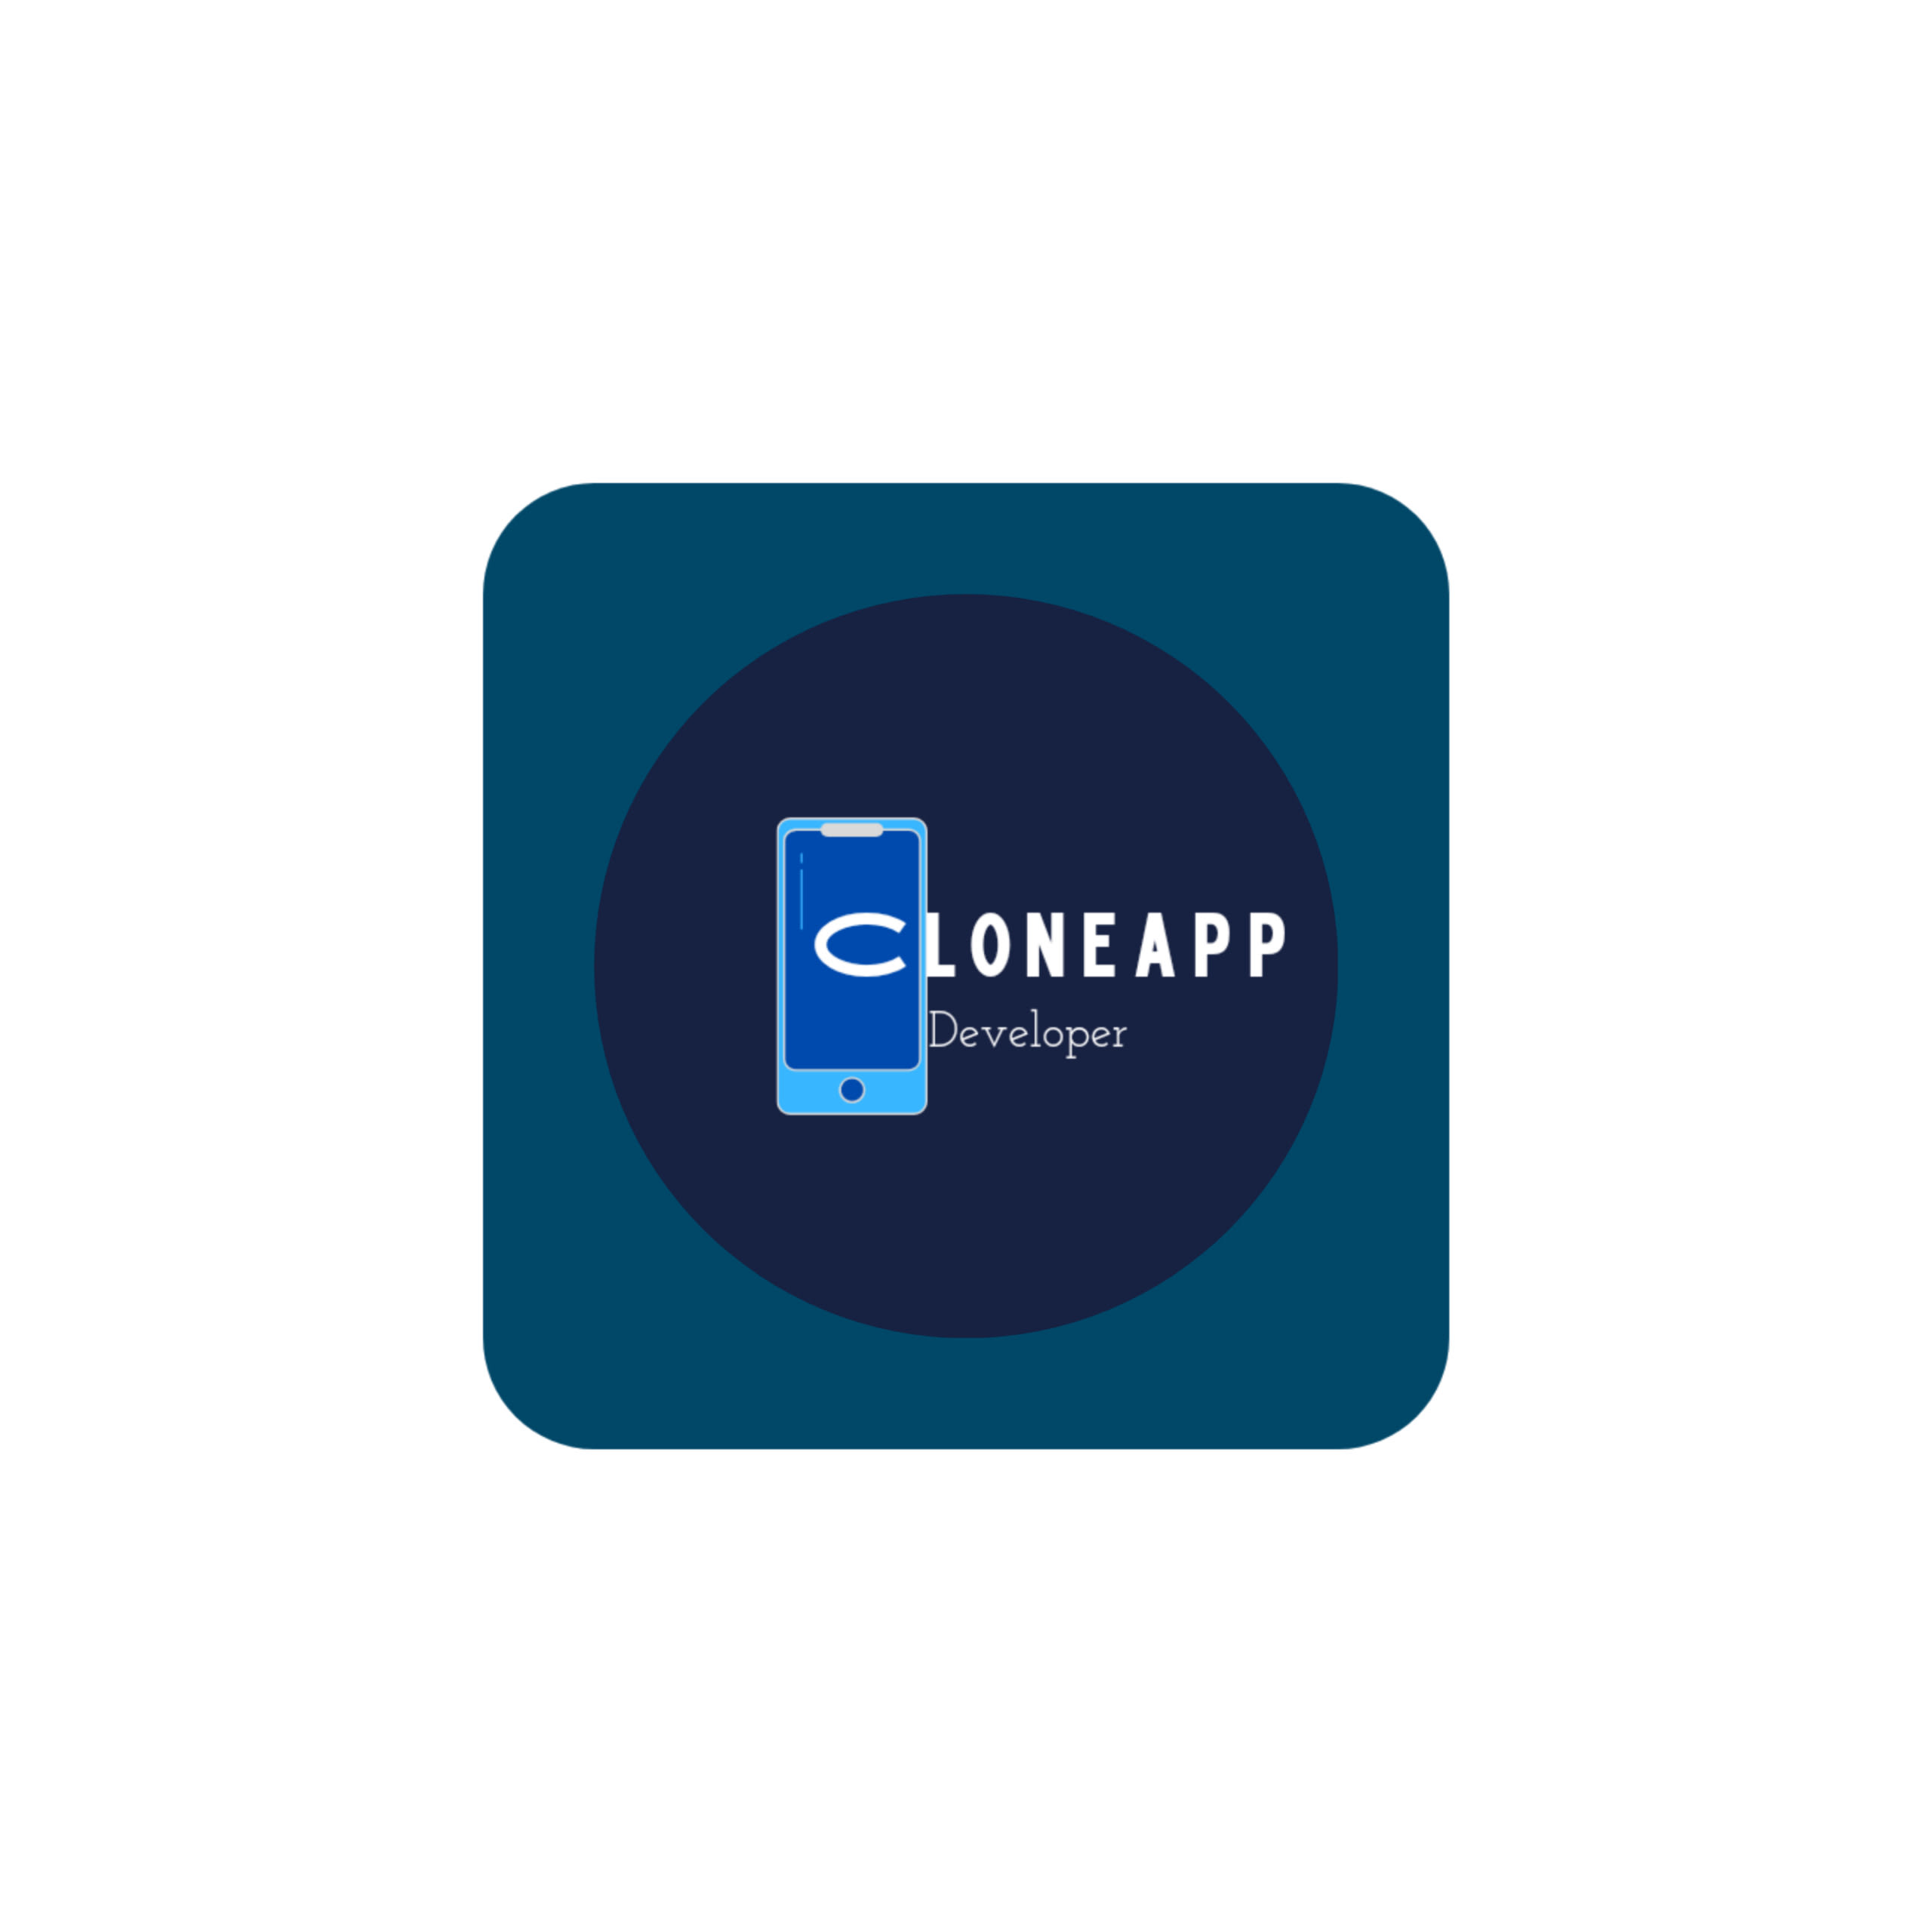 Clone Apps on Kodular 2024 là một công cụ mạnh mẽ để bạn có thể tạo ra một ứng dụng đẳng cấp chỉ trong vài phút. Với các tính năng độc đáo của Kodular, bạn có thể dễ dàng sao chép các thành phần của một ứng dụng đã tồn tại và sử dụng chúng cho riêng mình. Điều này giúp tiết kiệm thời gian và nỗ lực để tạo ra một ứng dụng hoàn chỉnh hơn.